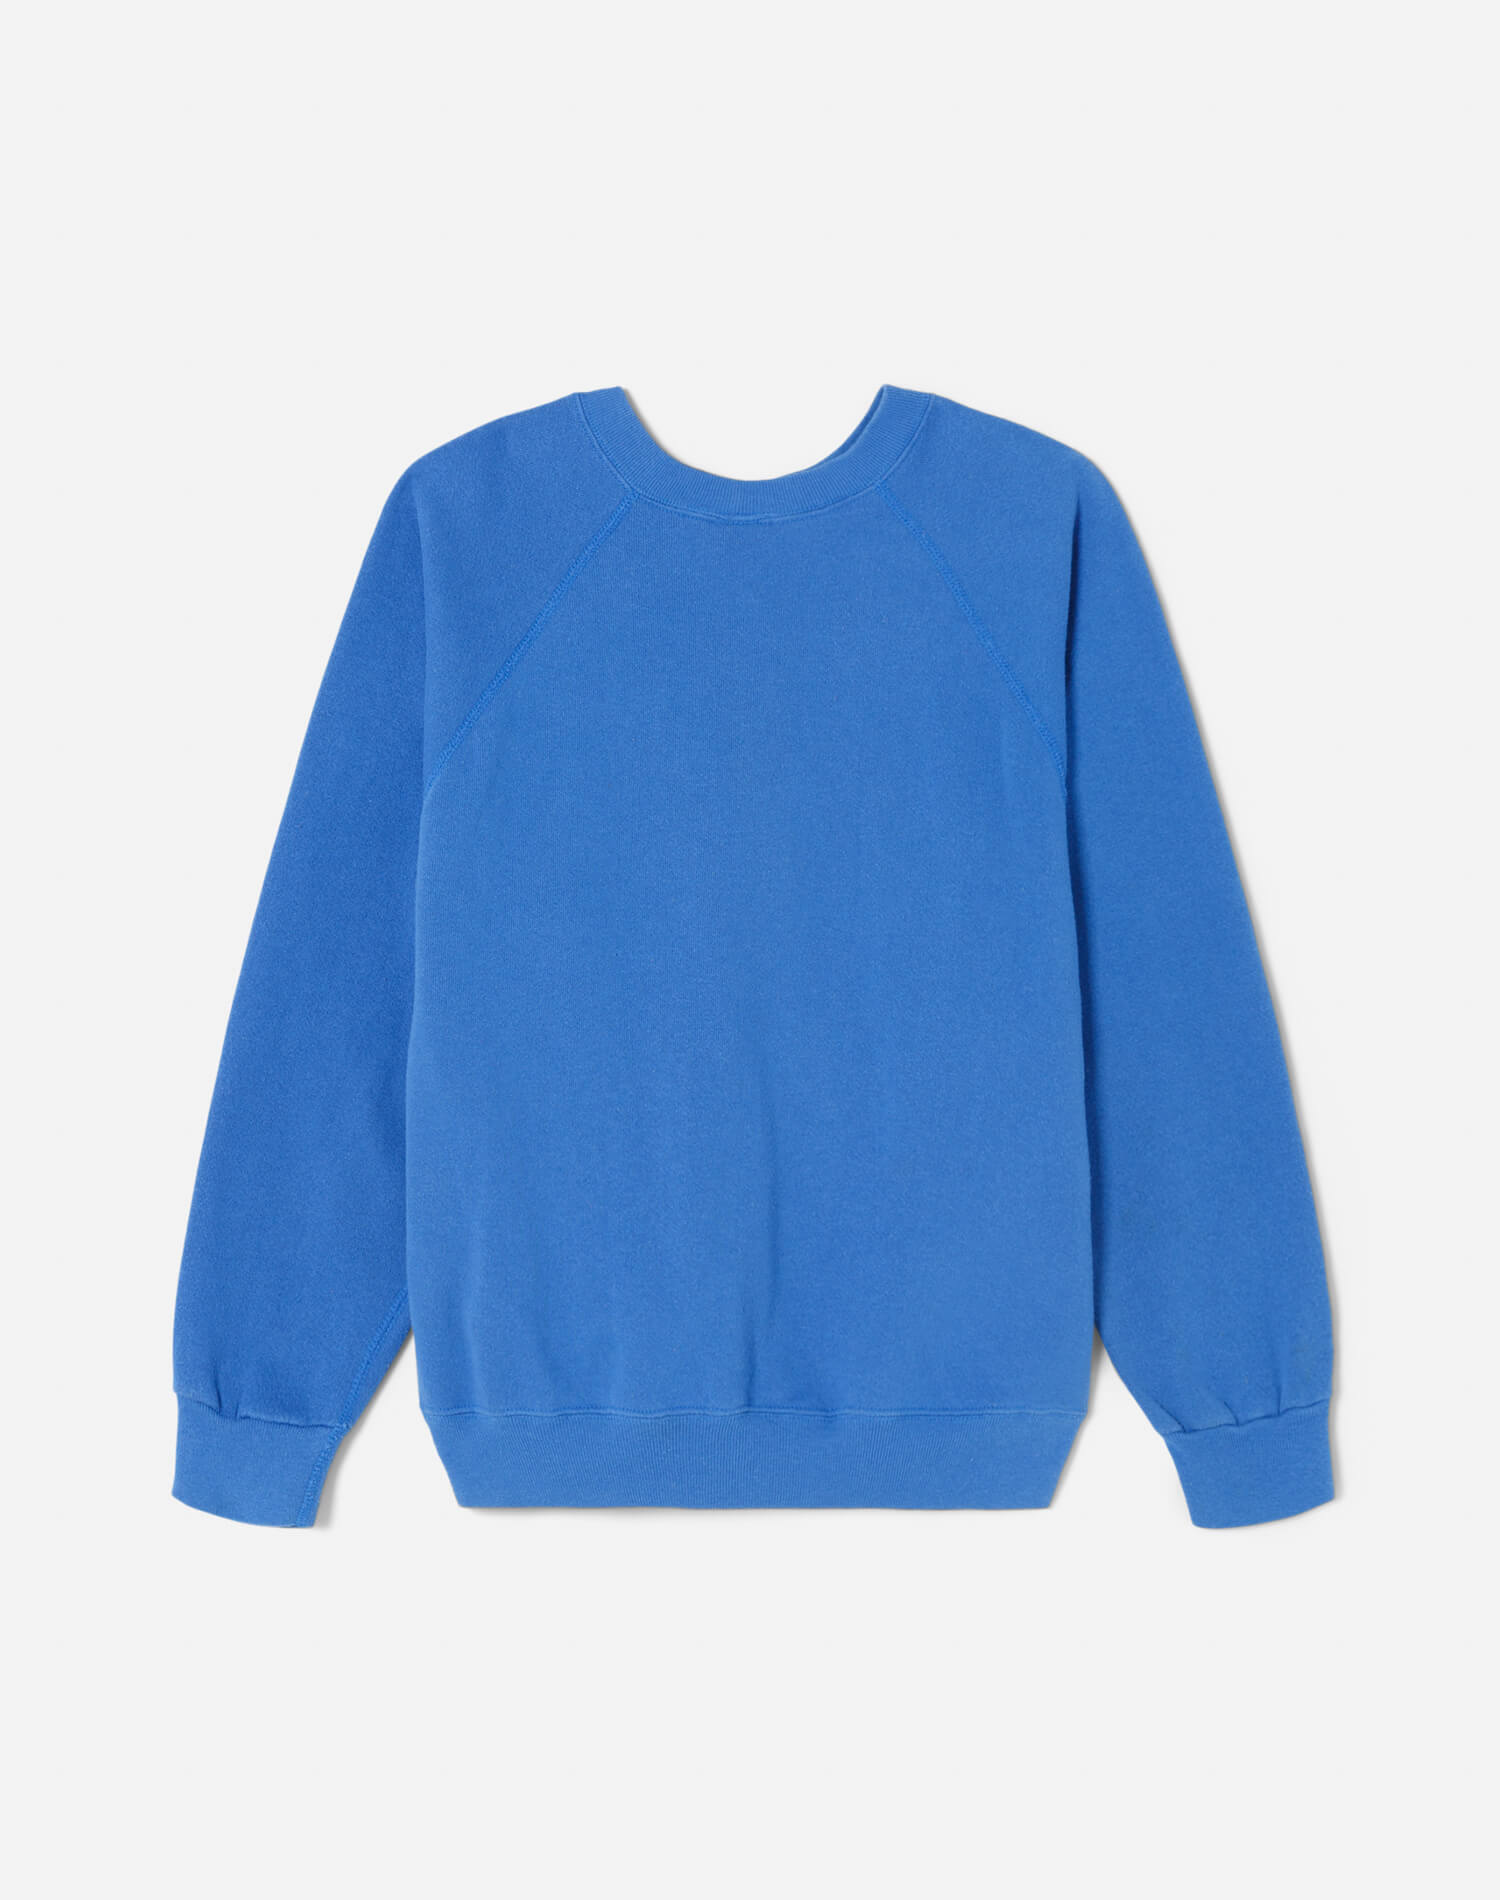 Upcycled "Montauk" Sweatshirt - Blue